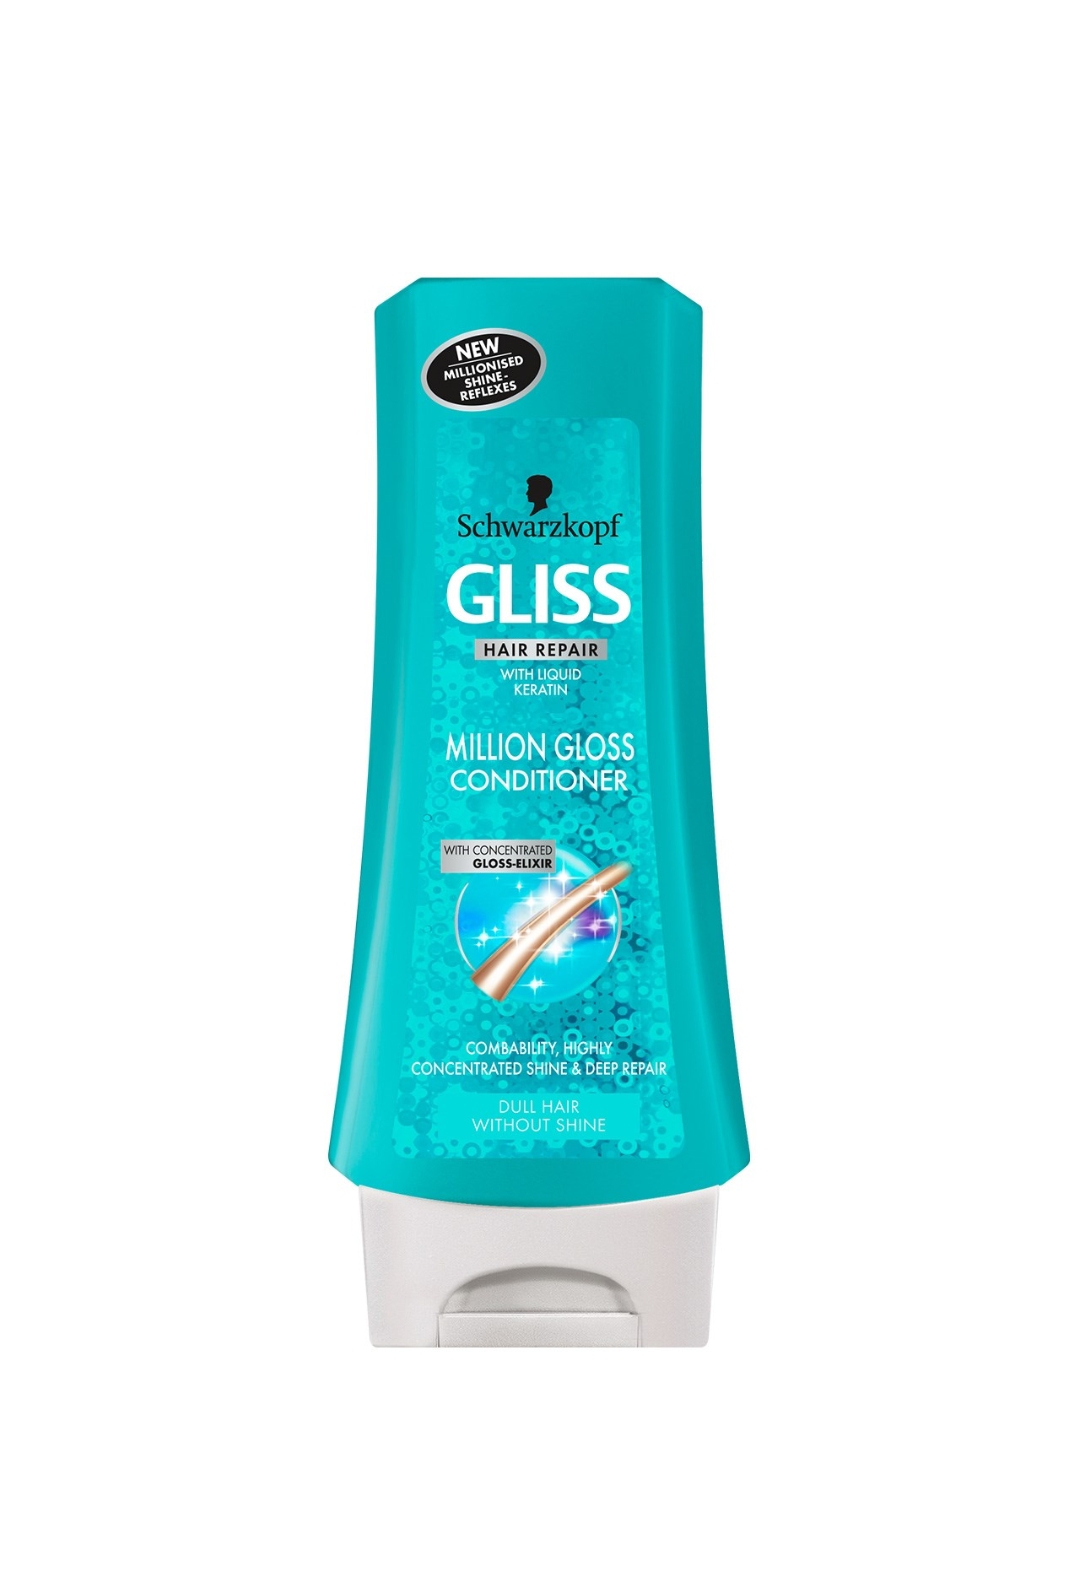 فراورده های حالت دهنده ،نرم کننده وتثبیت کننده آرایش مو (کرمها ، لوسیونها وروغنها) GLISS Million Gloss Conditioner